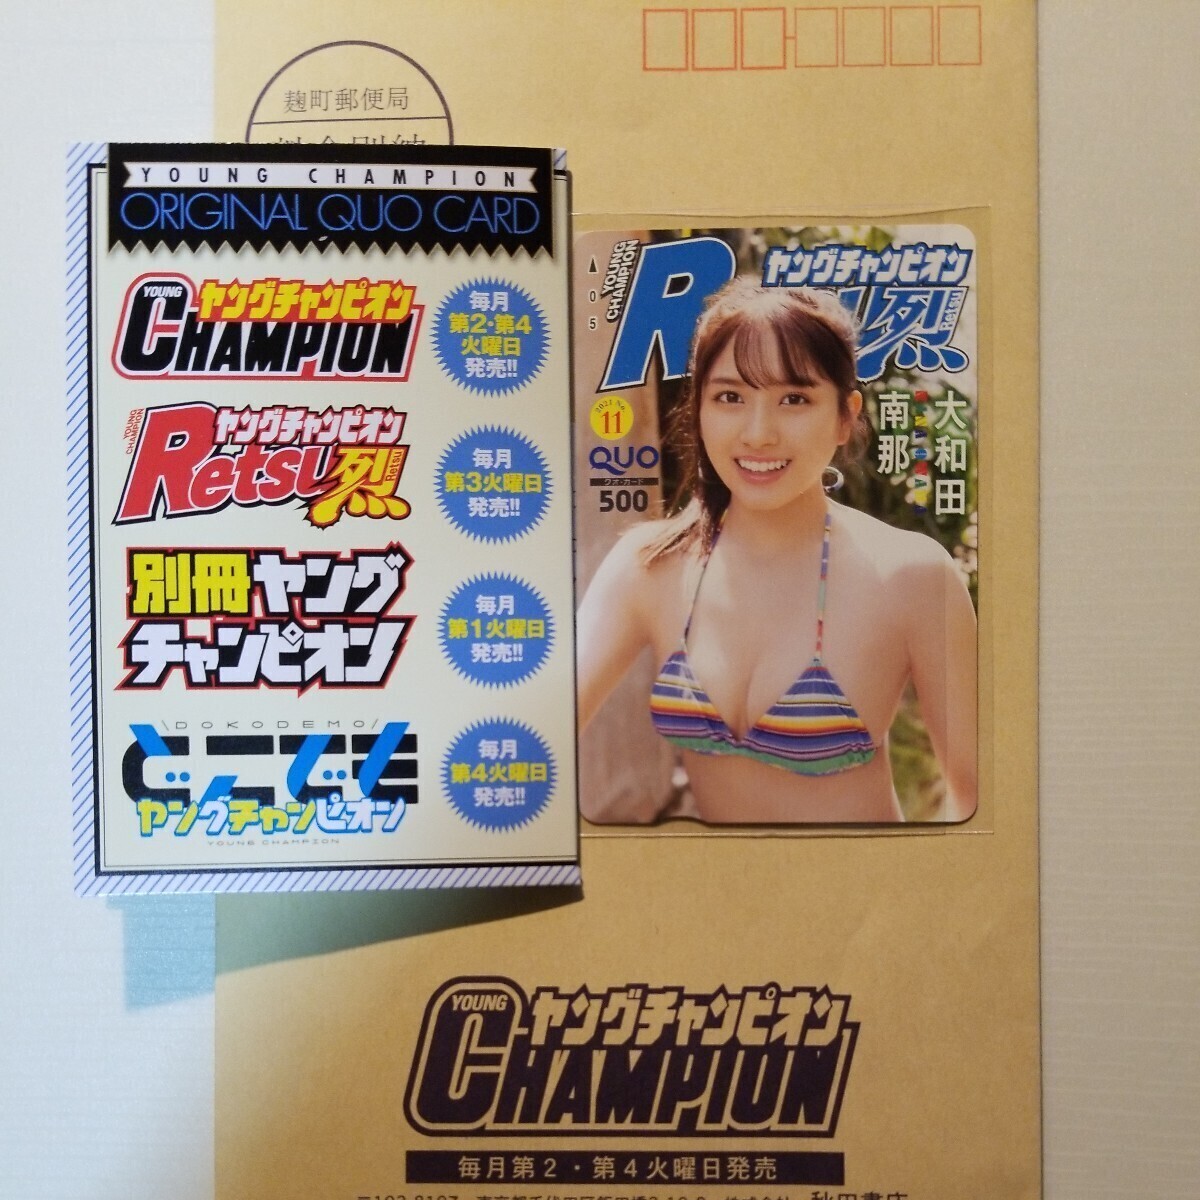 大和田南那さんの抽選プレクオカードです。少年雑誌の懸賞品です。 _画像1